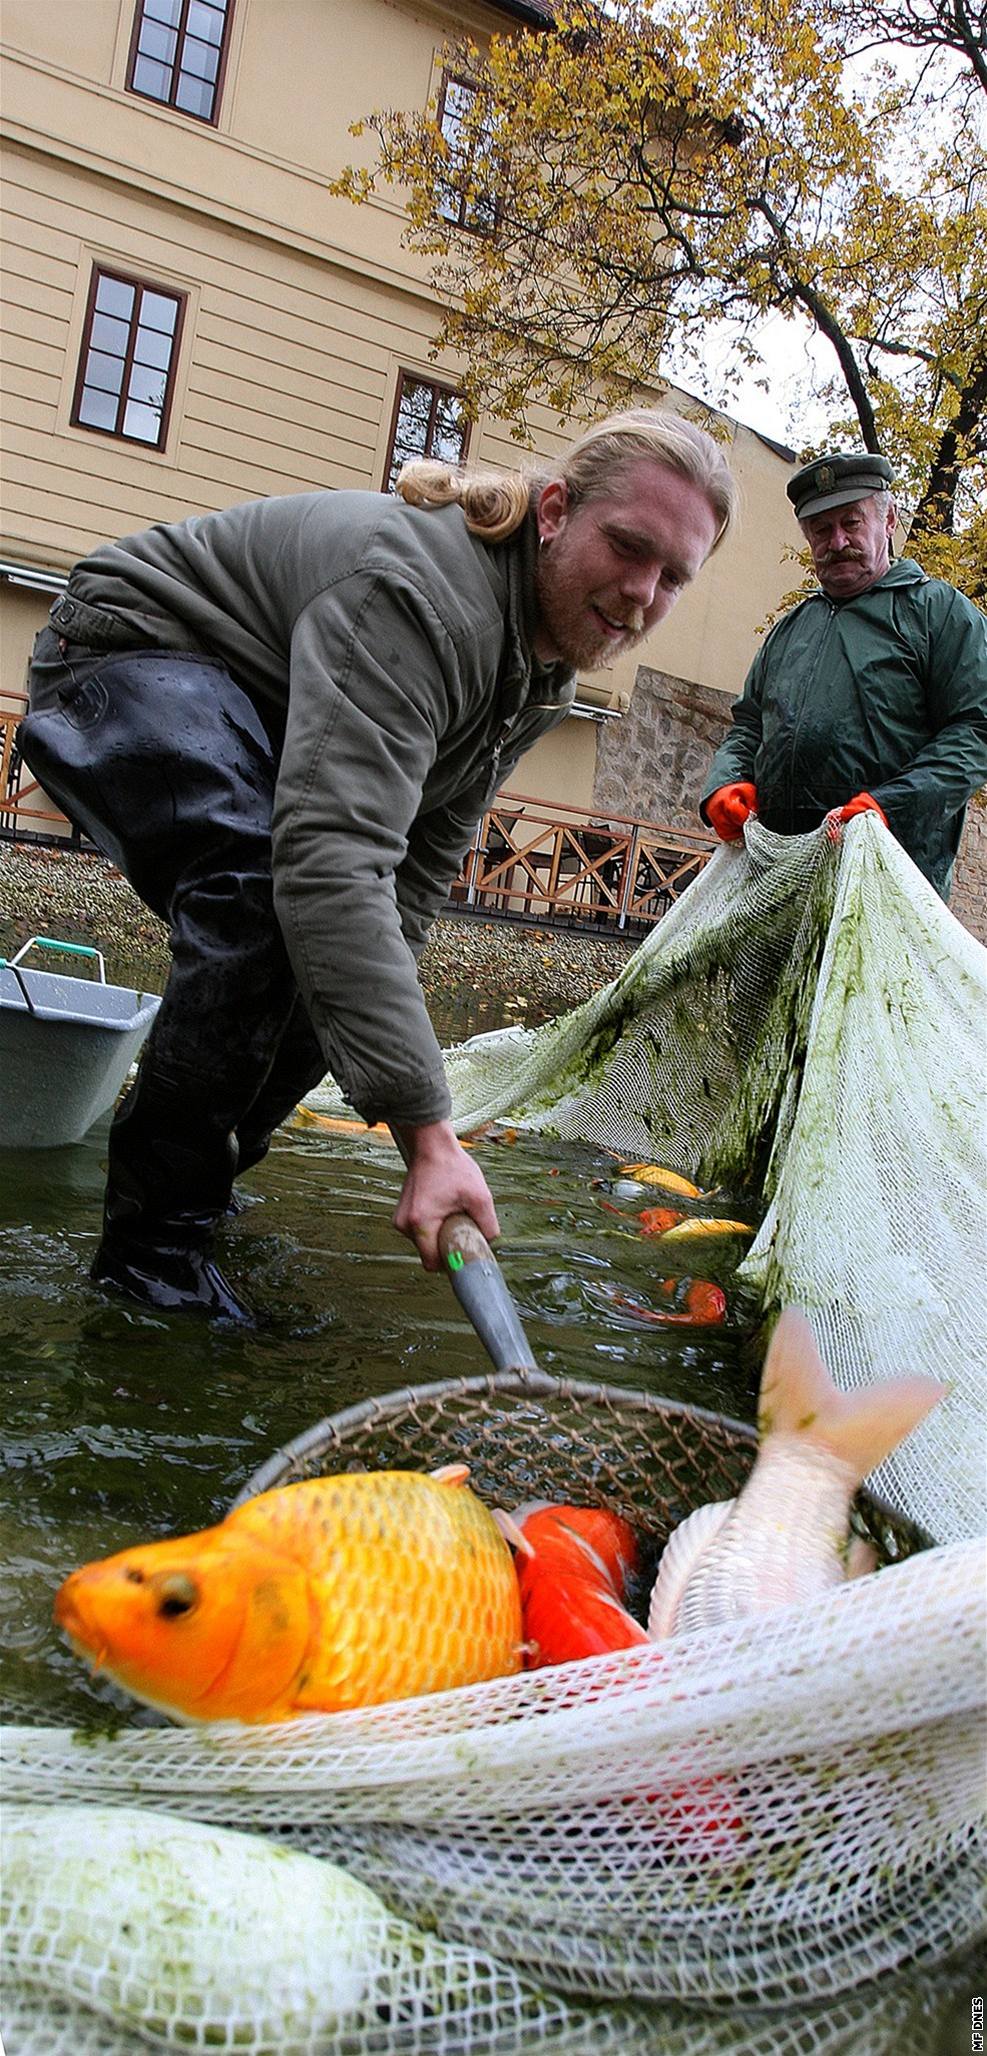 Rybái loví okrasné ryby pi vypoutní parkového jezírka v Mlýnské strouze v centru Plzn